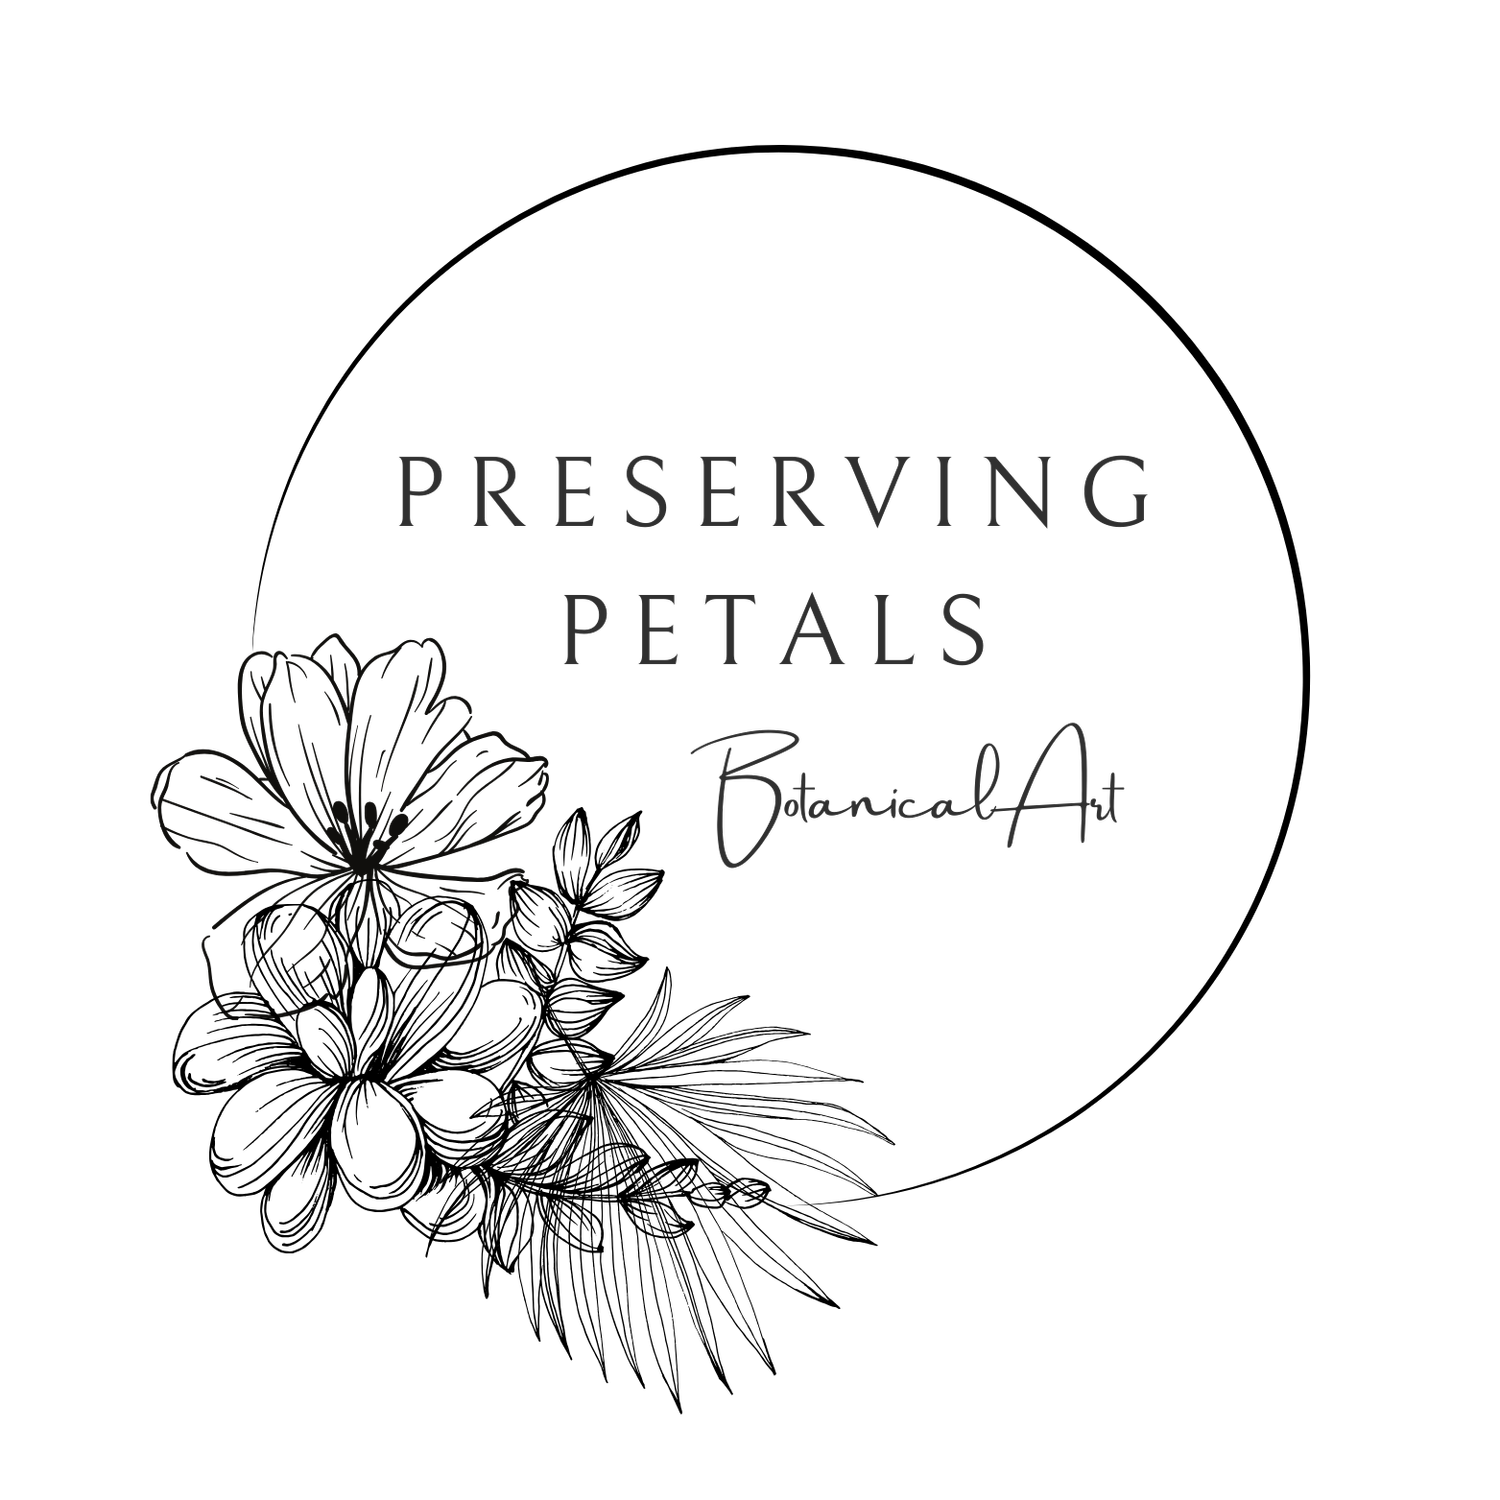 Preserving Petals